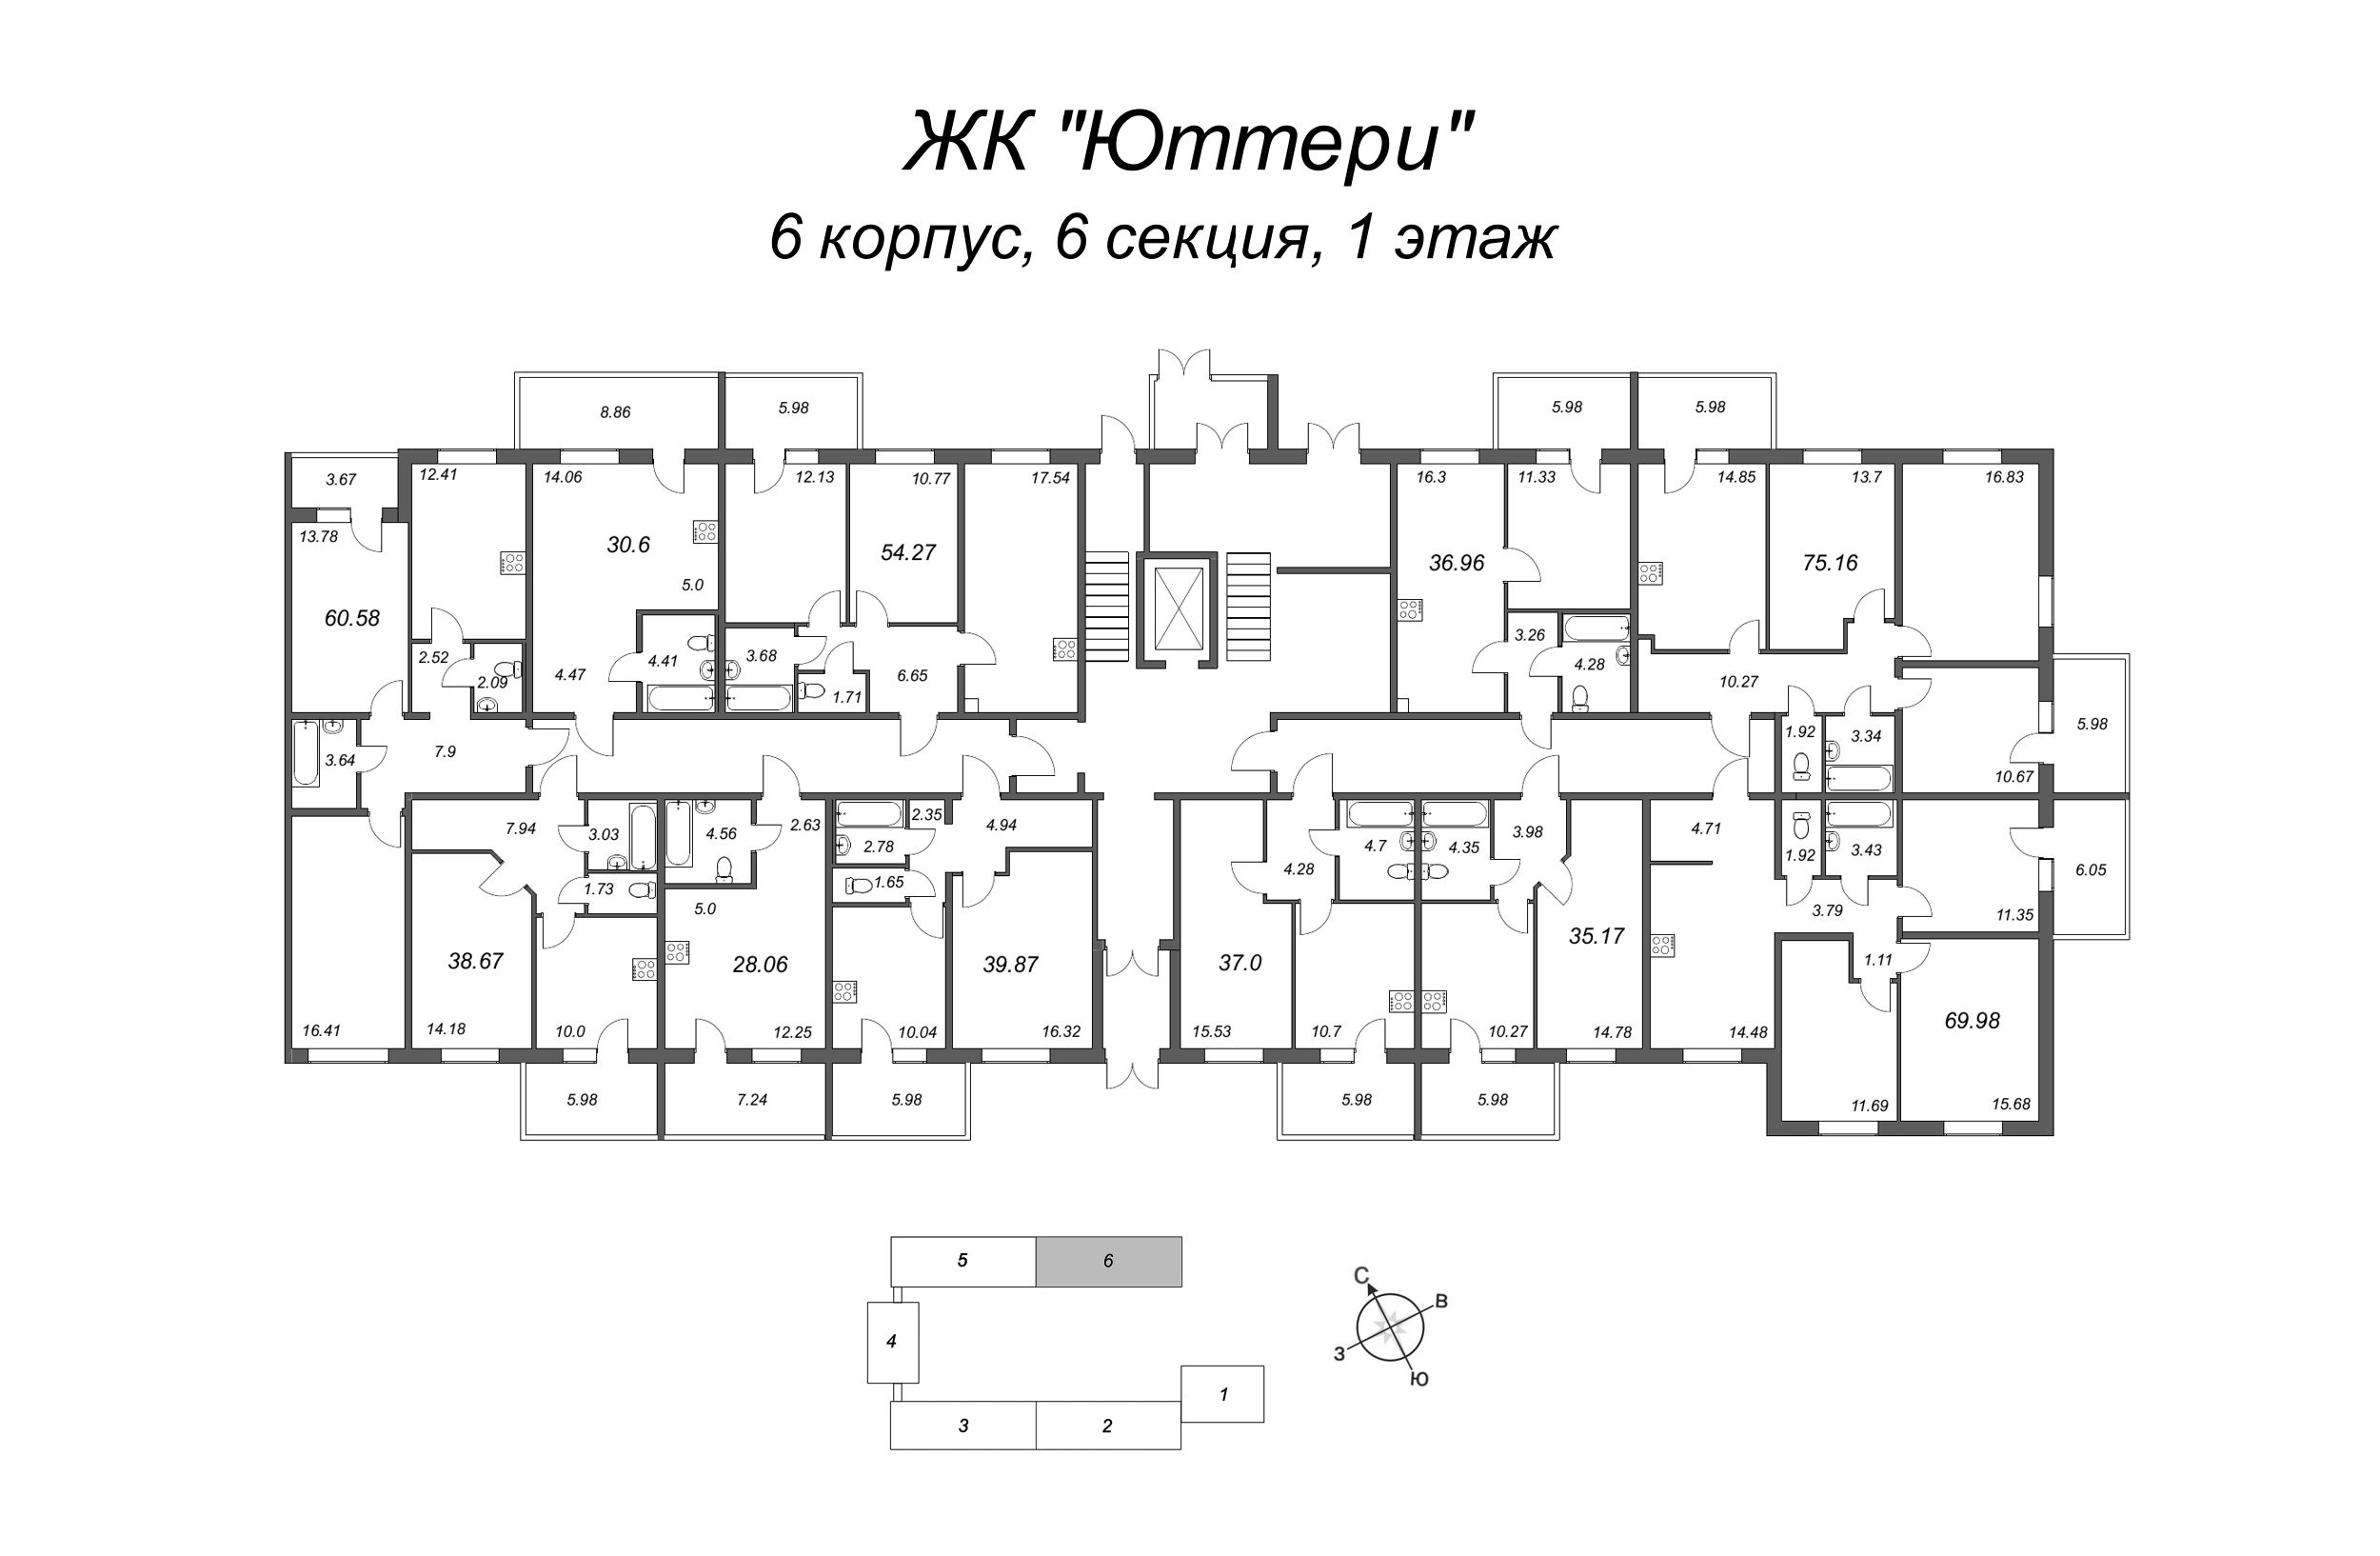 3-комнатная квартира, 68.16 м² в ЖК "Юттери" - планировка этажа